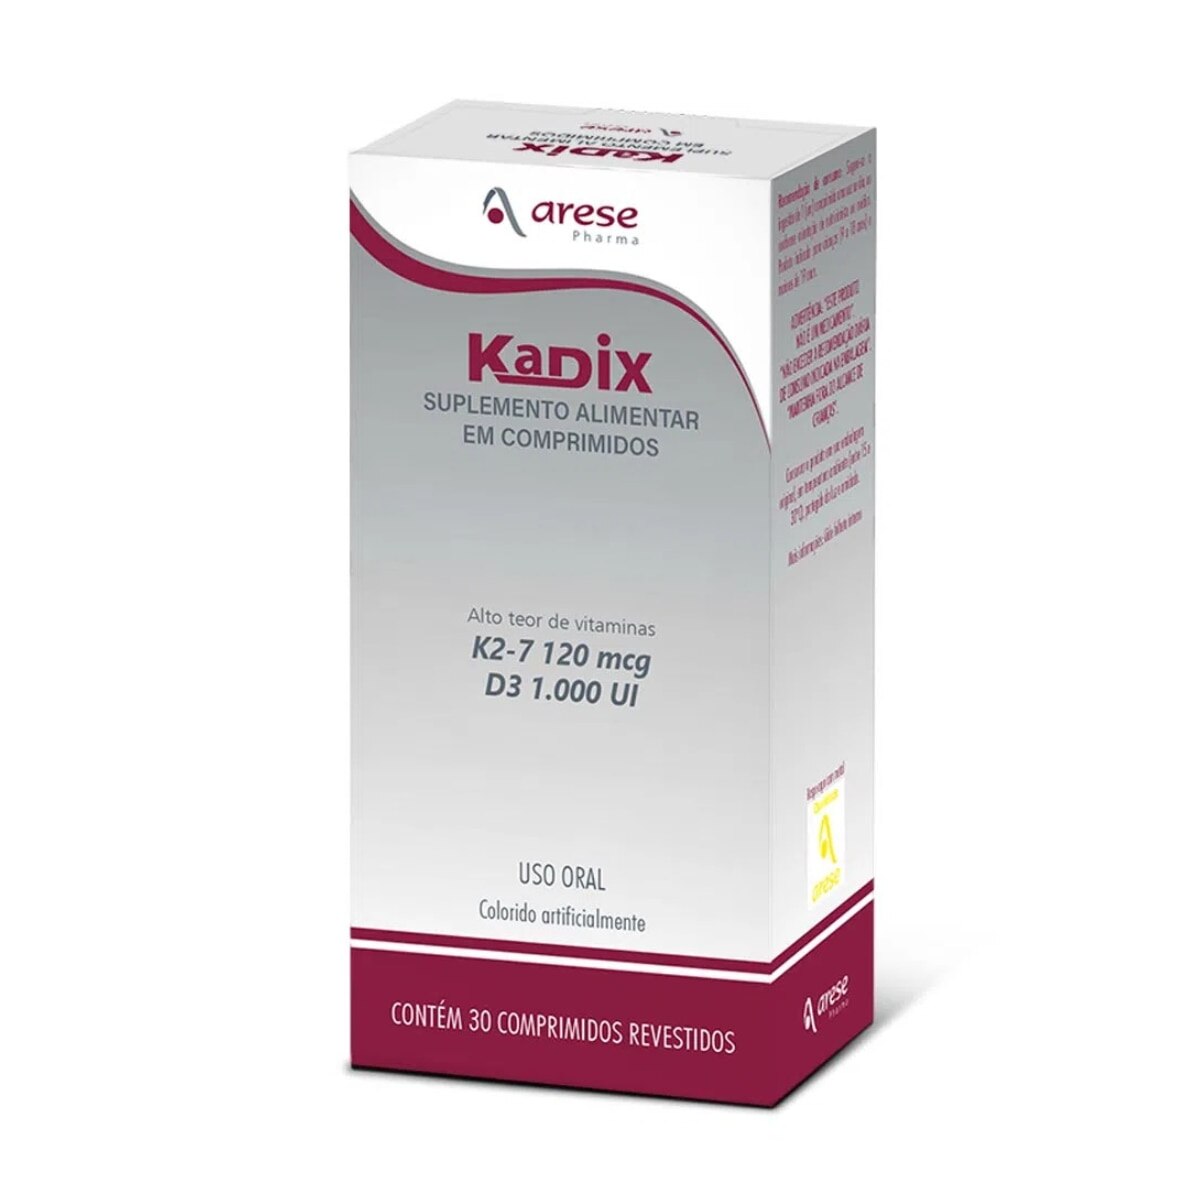 Kadix 120mcg + 1.00UI 30 Comprimidos Revestidos